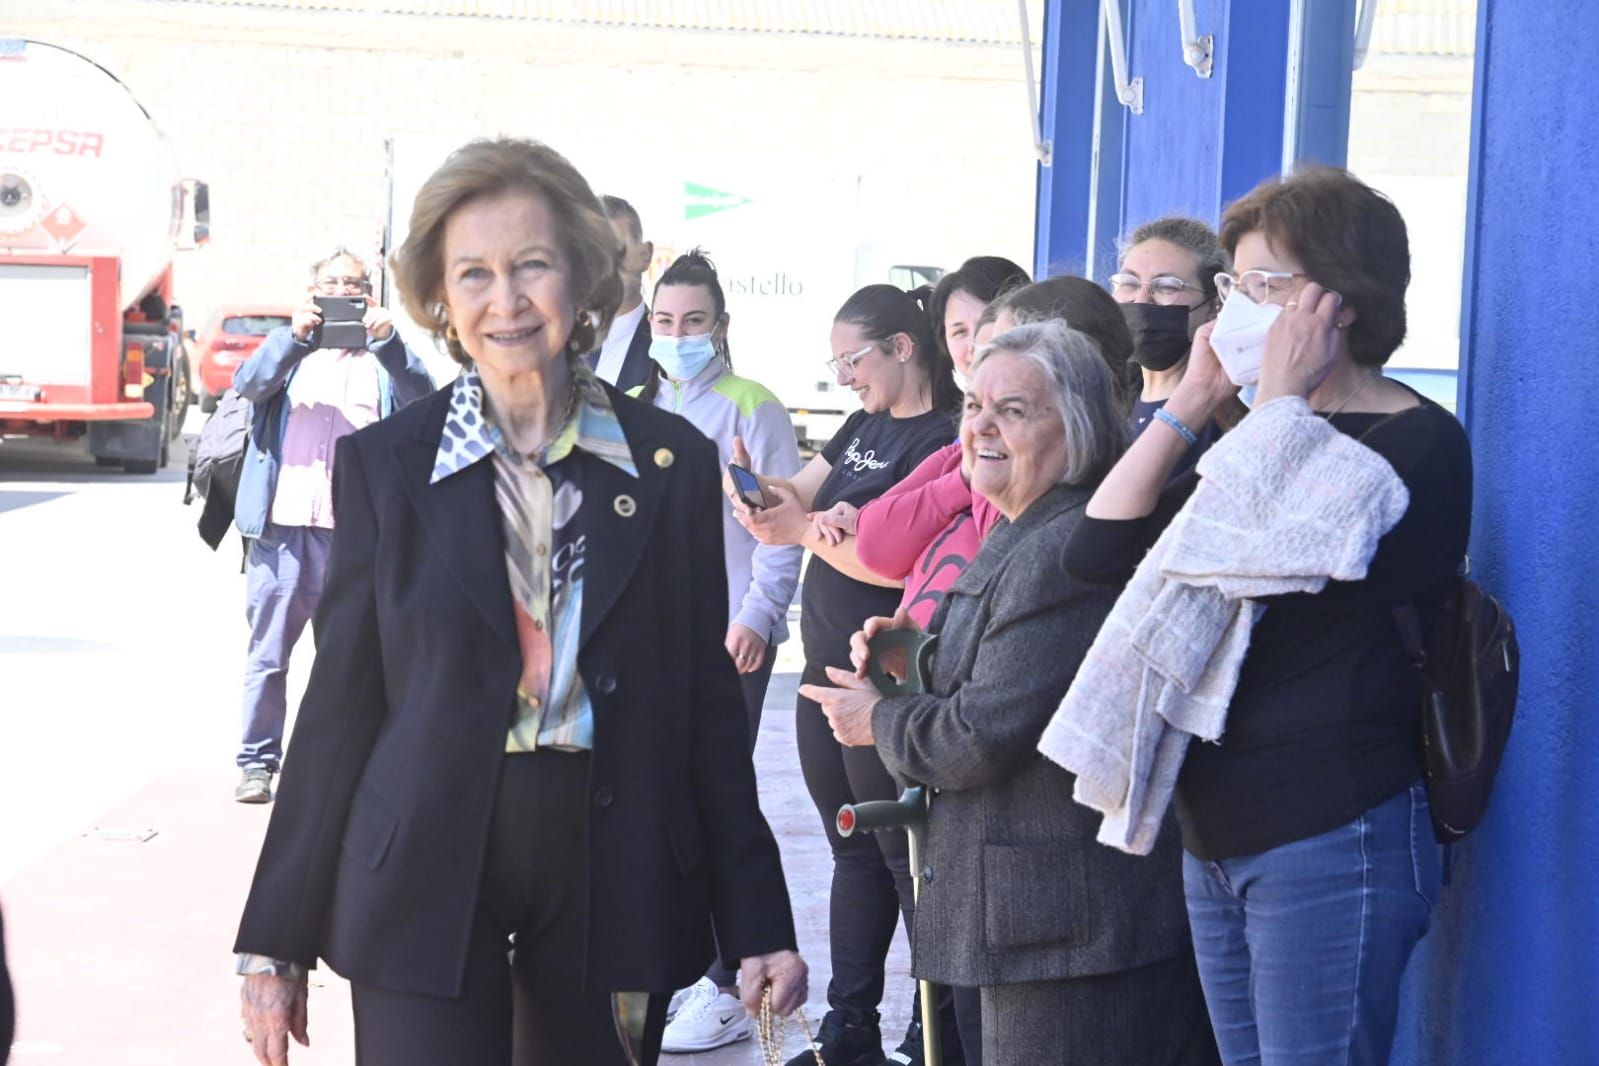 La reina Sofía visita Castelló: las primeras imágenes